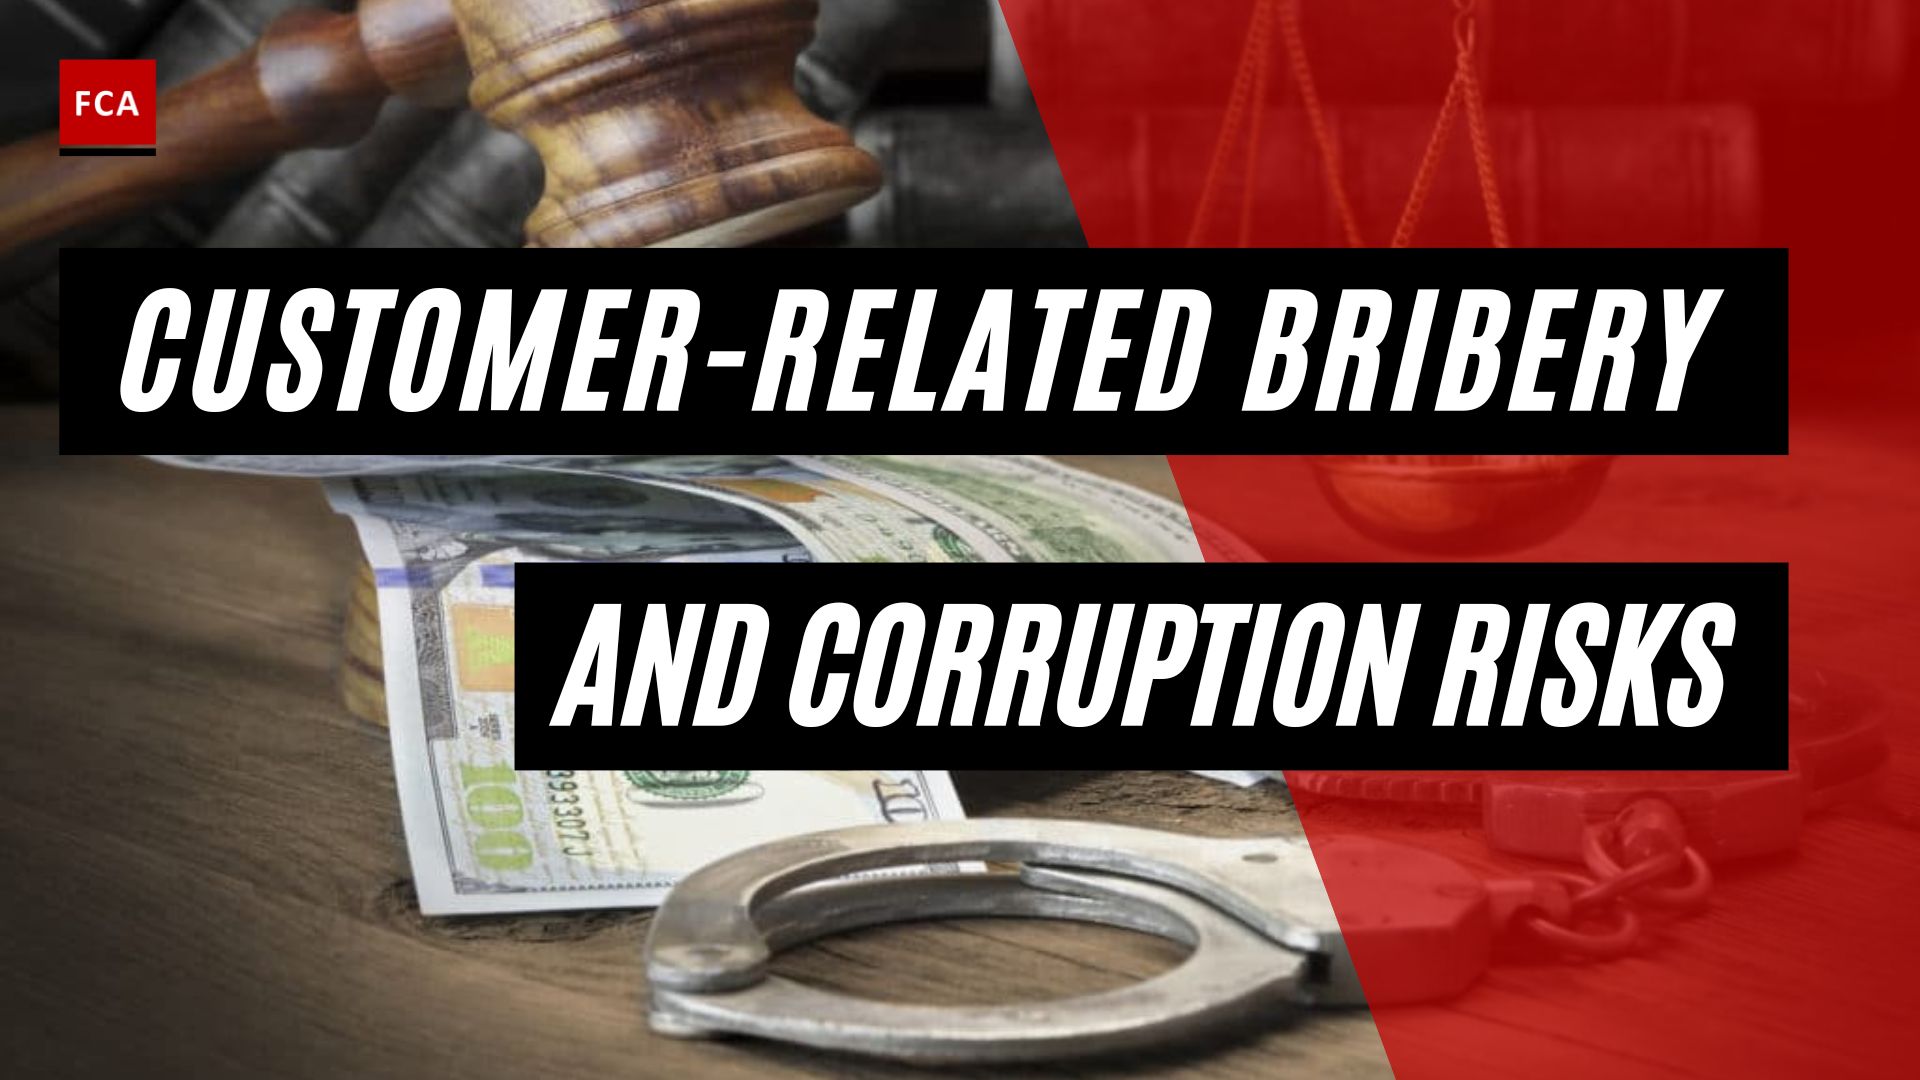 Customer-Related Bribery